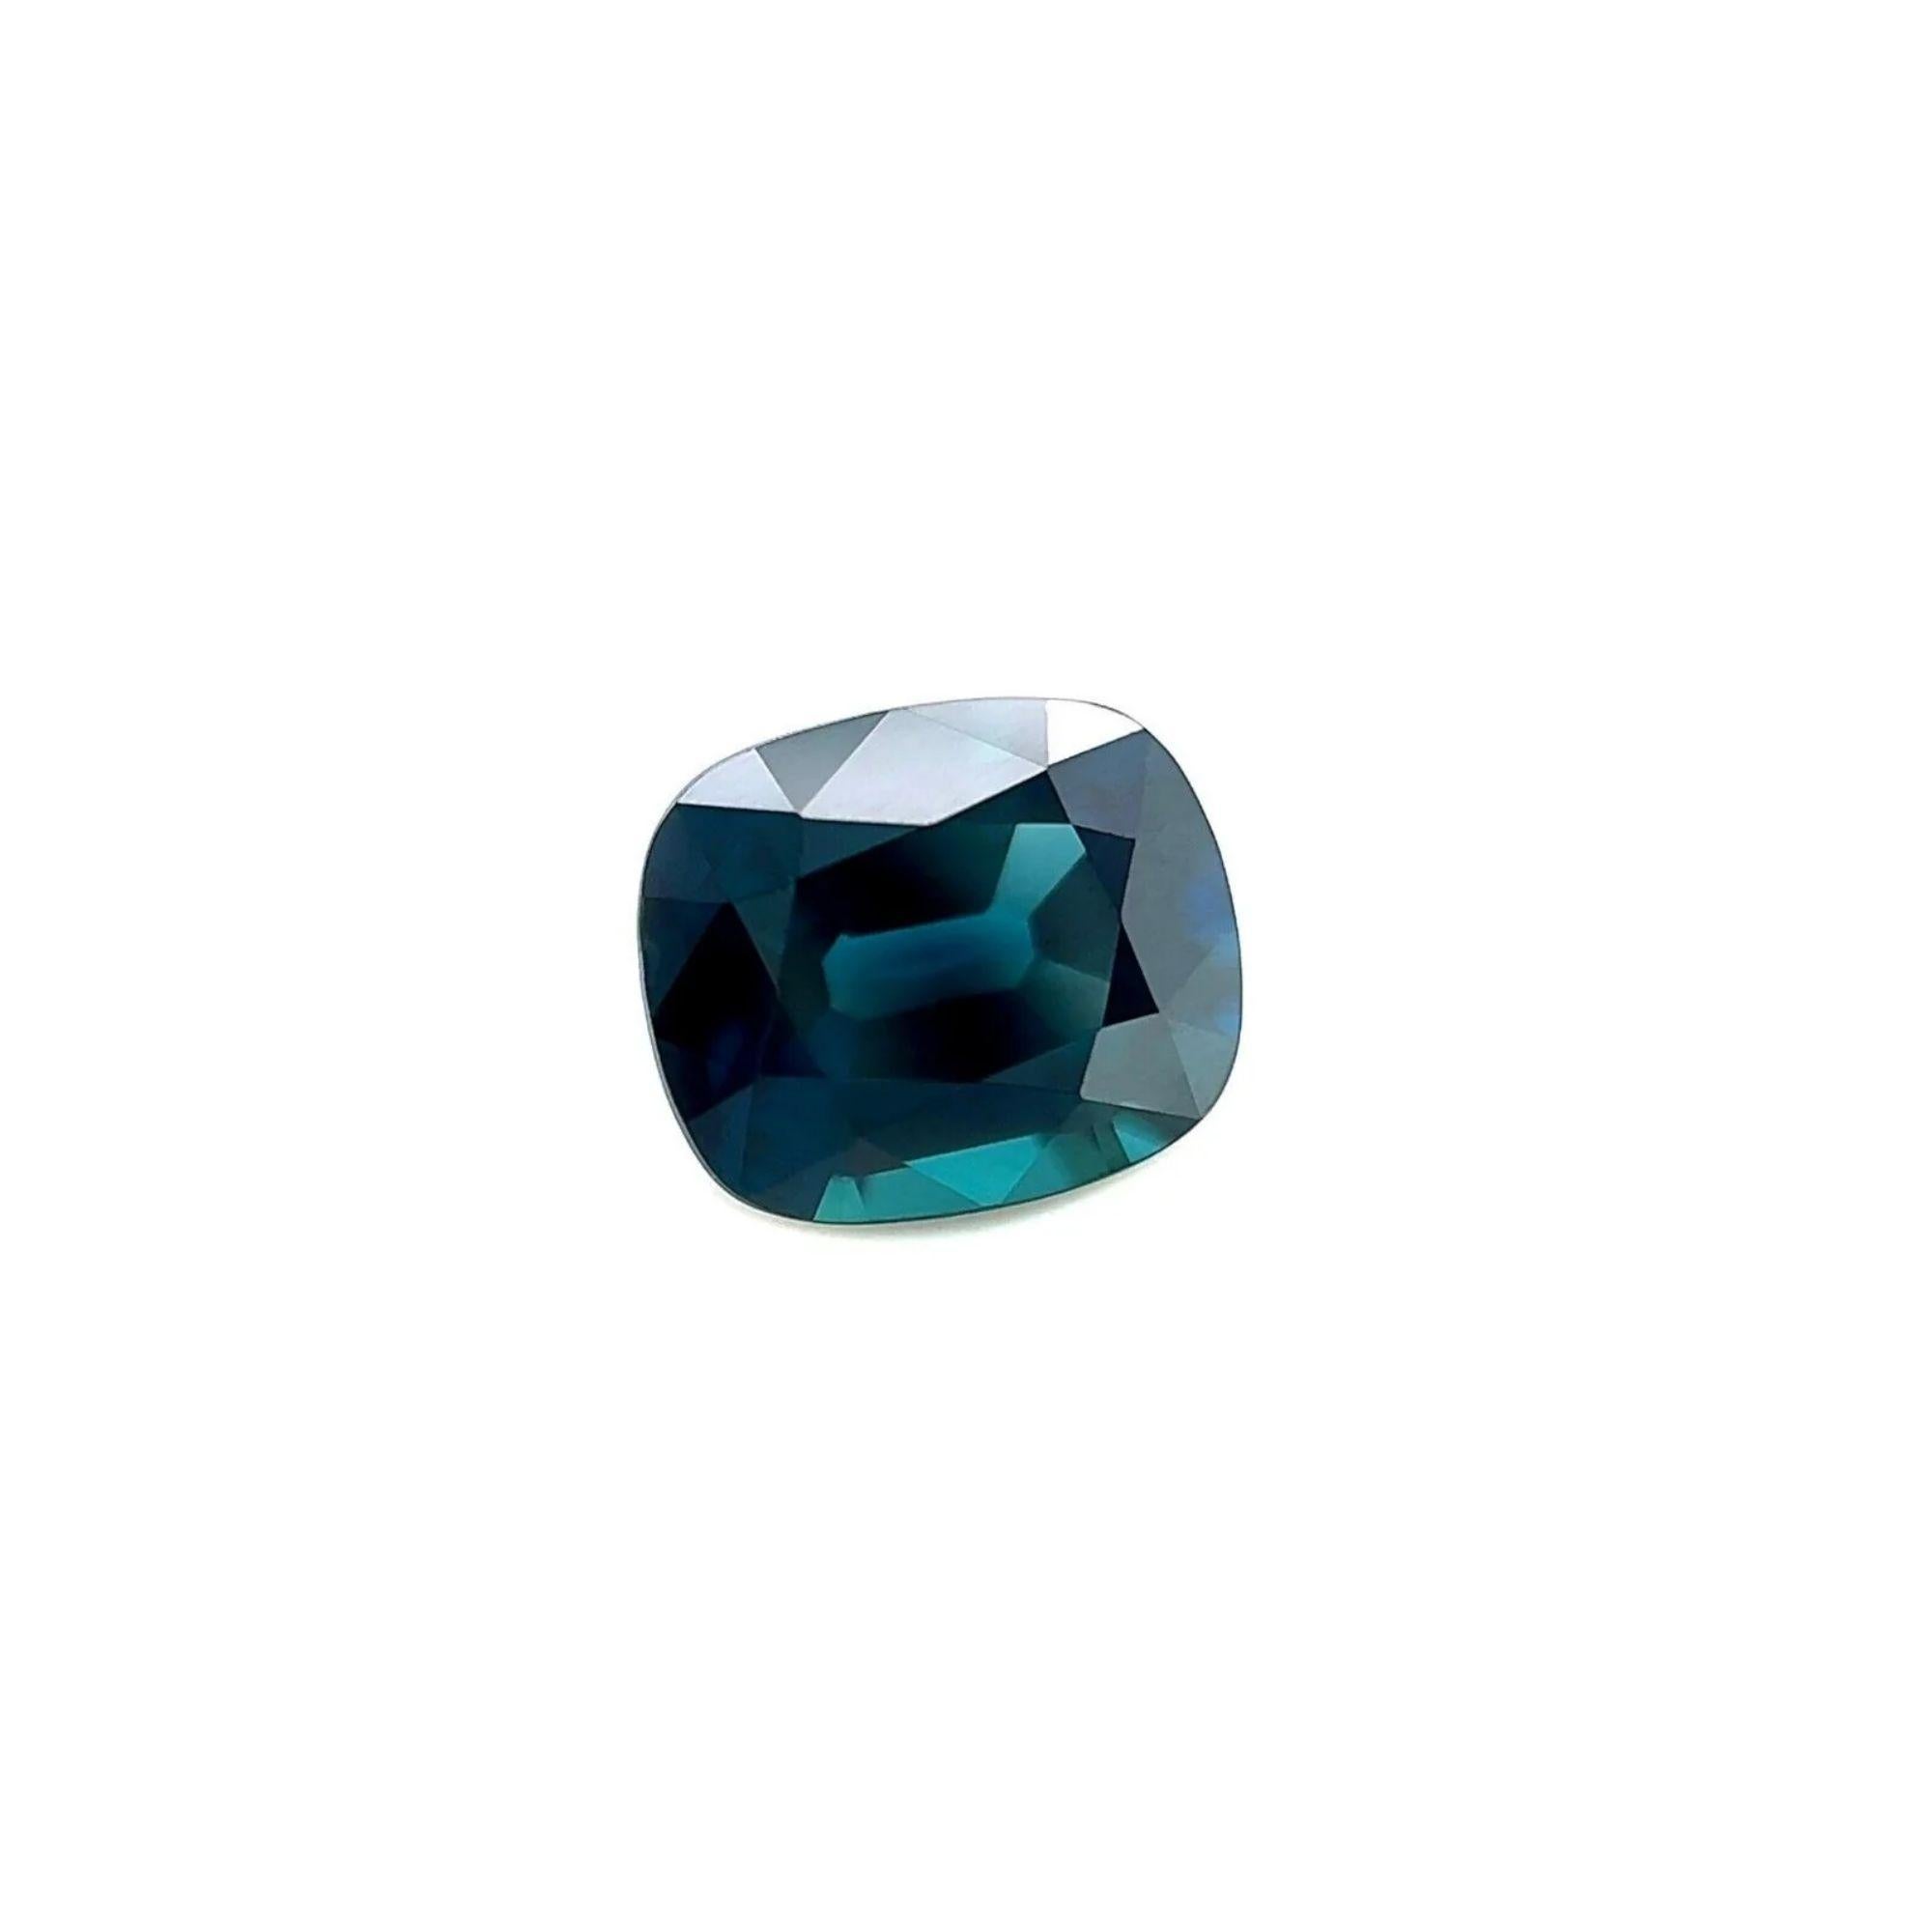 Saphir bleu sarcelle 1,10 carat non traité certifié GRA, taille coussin non chauffée 6,4 x 5,4 mm

GRA Certified Fine Teal Blue Sapphire Untreated Loose Gem.
Saphir de 1,10 carat d'une belle couleur bleu sarcelle et d'une excellente clarté, pierre